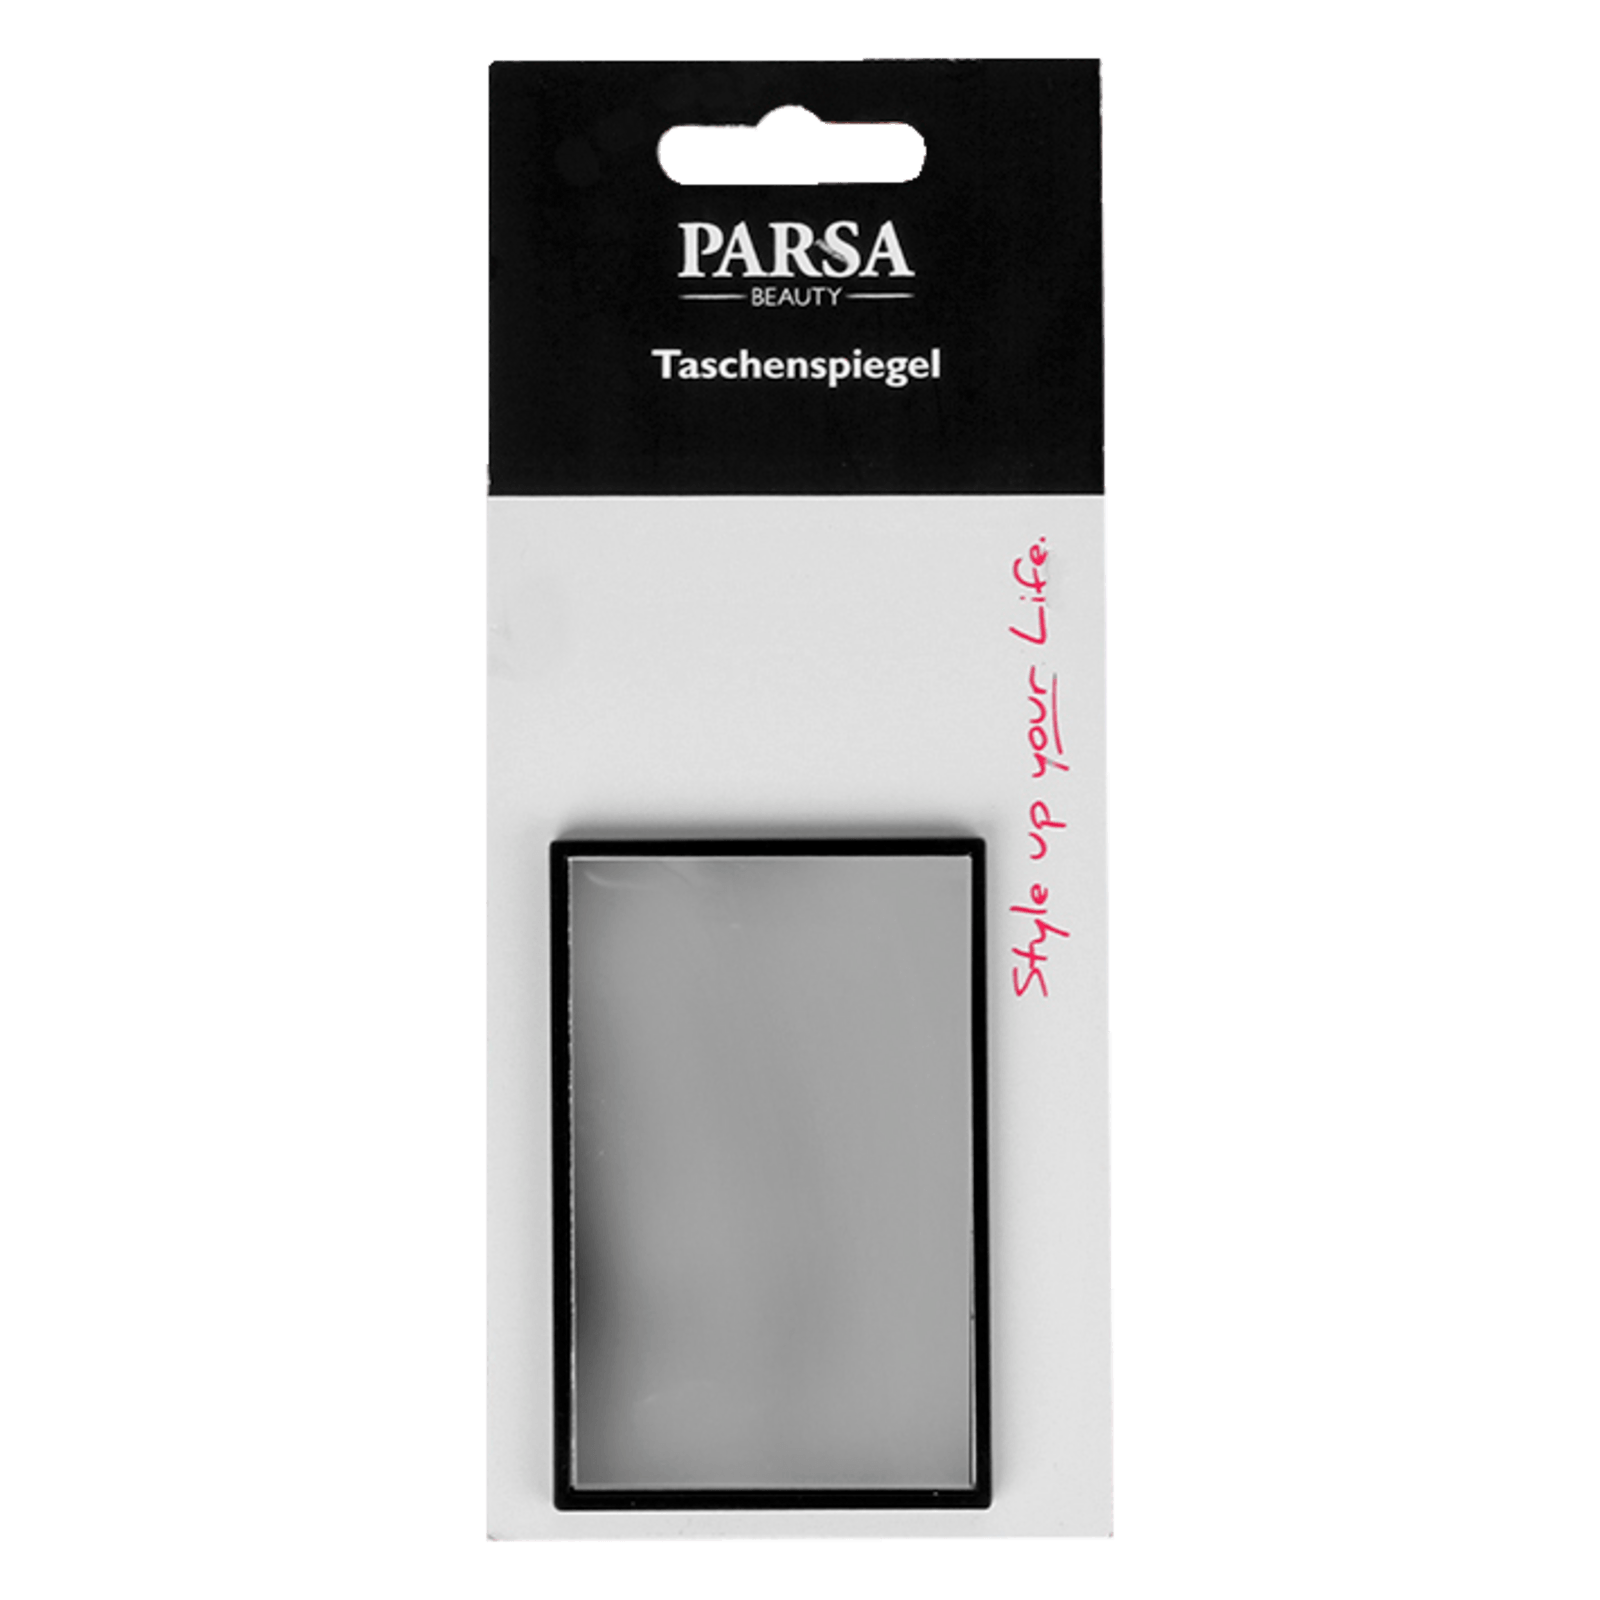 Parsa Saugnapf-Spiegel, schwarz, matt 10-fach Vergrösserung 1